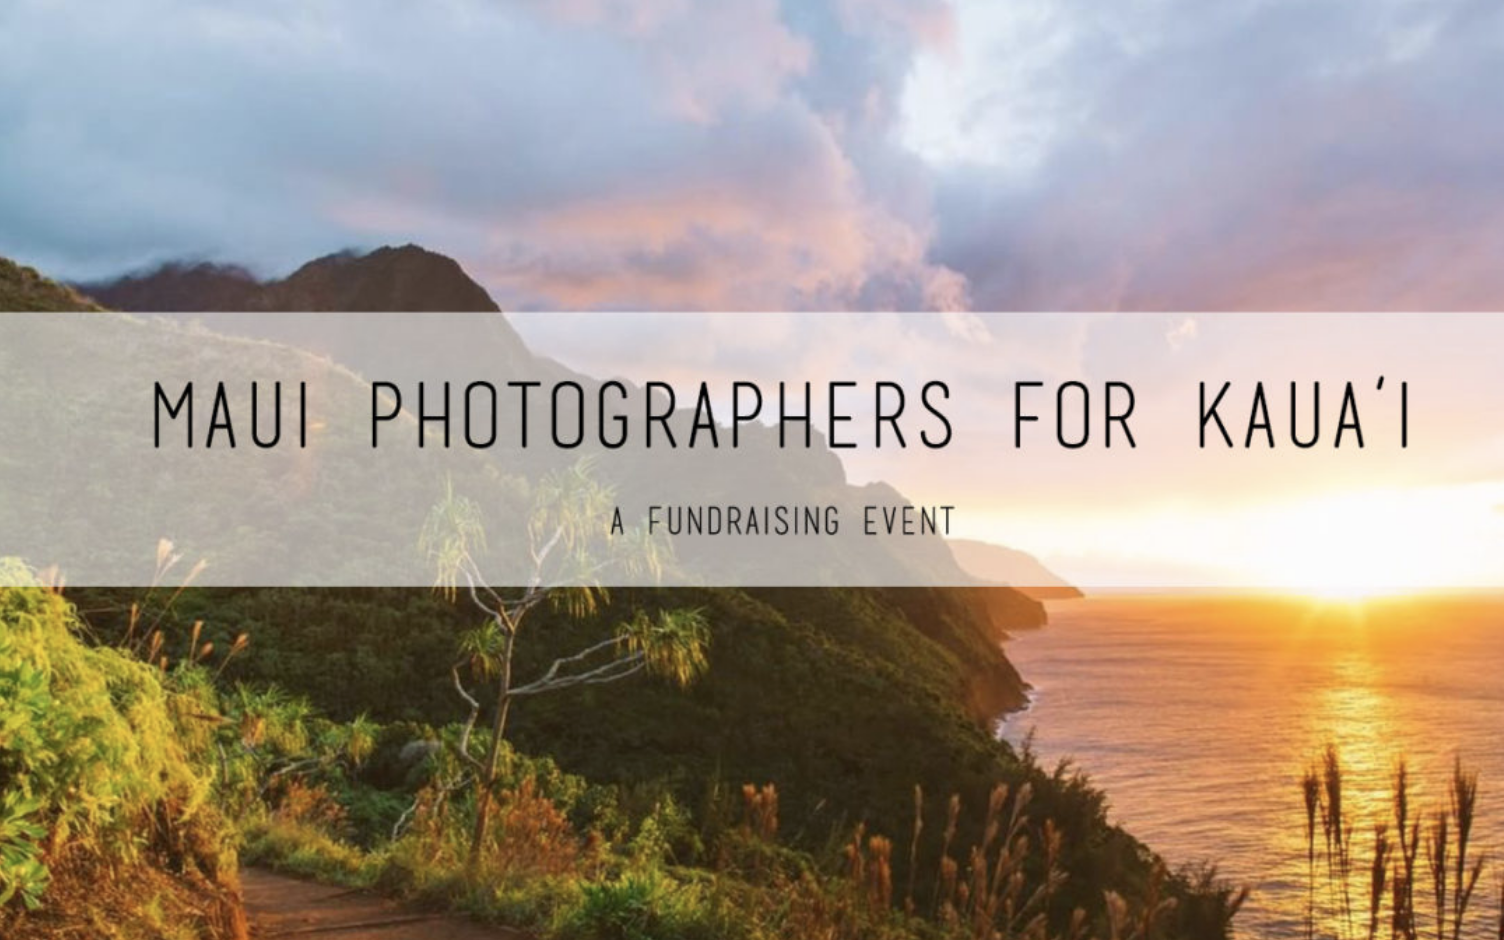 Photo sessions to benefit Kauai